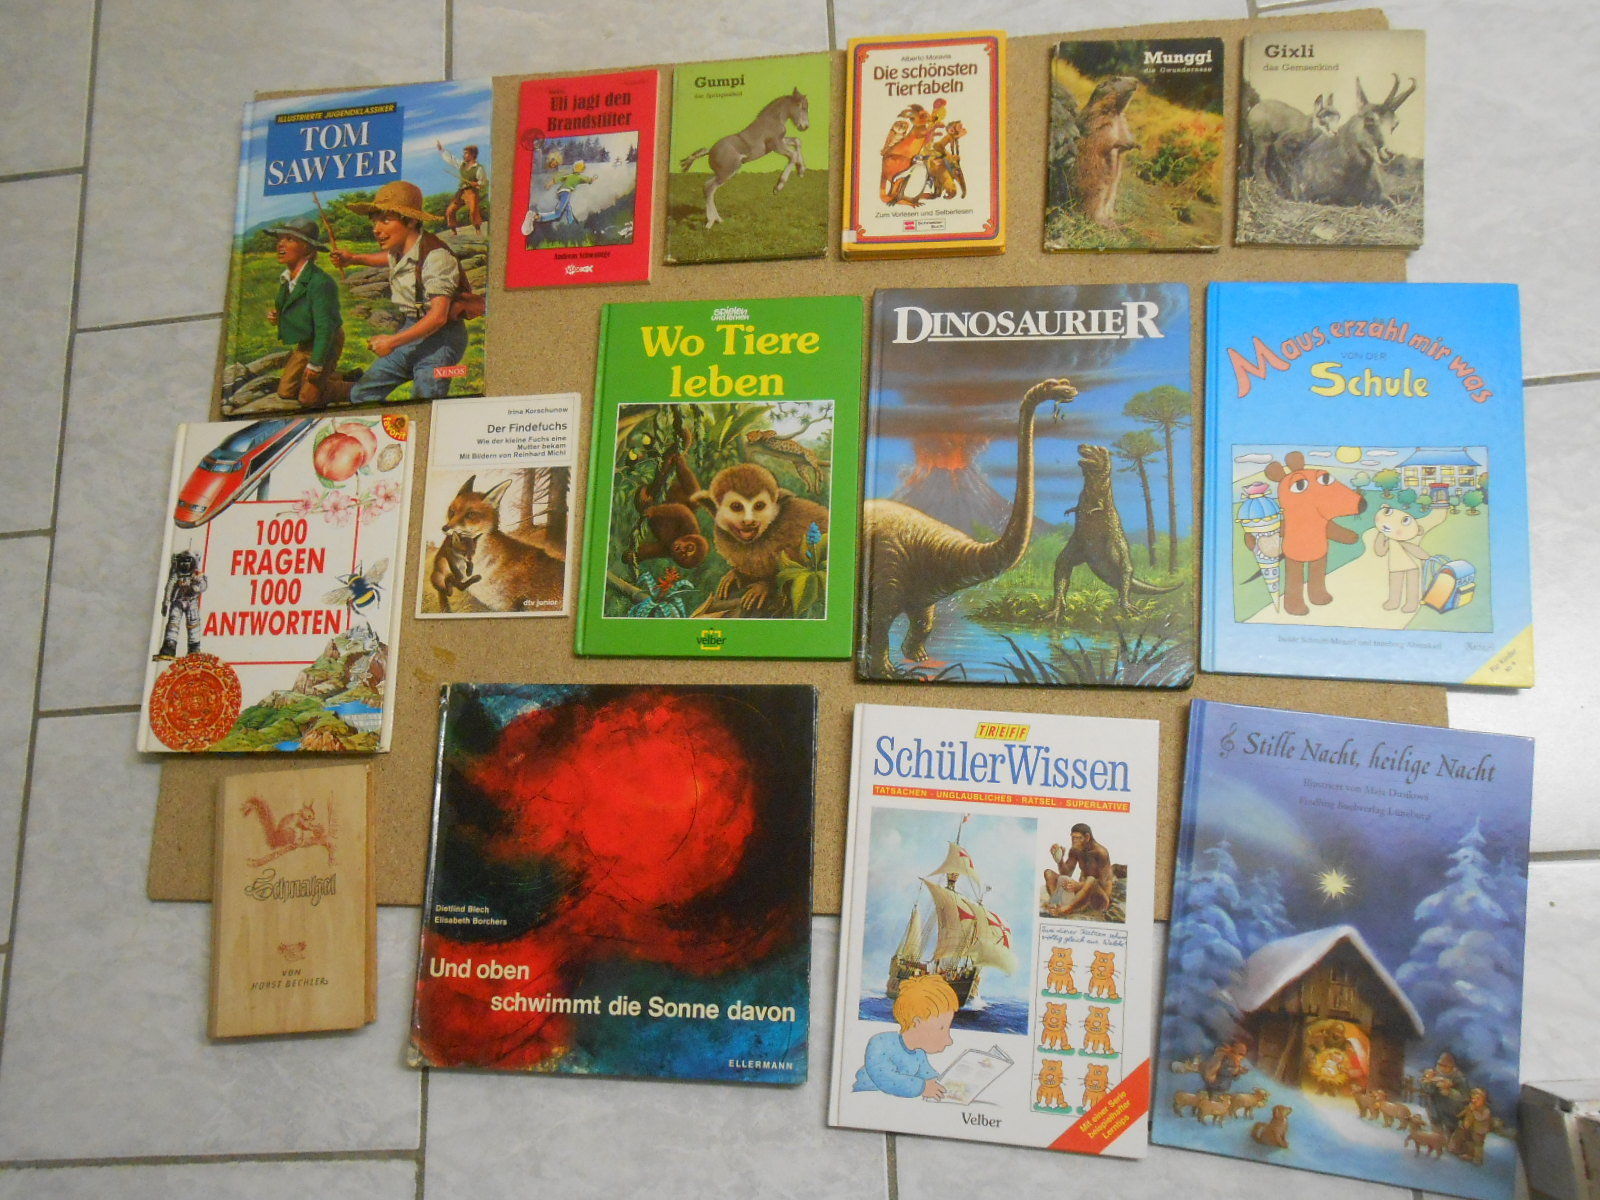 15 x Kinderbücher, Bilderbücher,Die Mausl,Tom Sawyer, Fndelfuchs viele Bilder